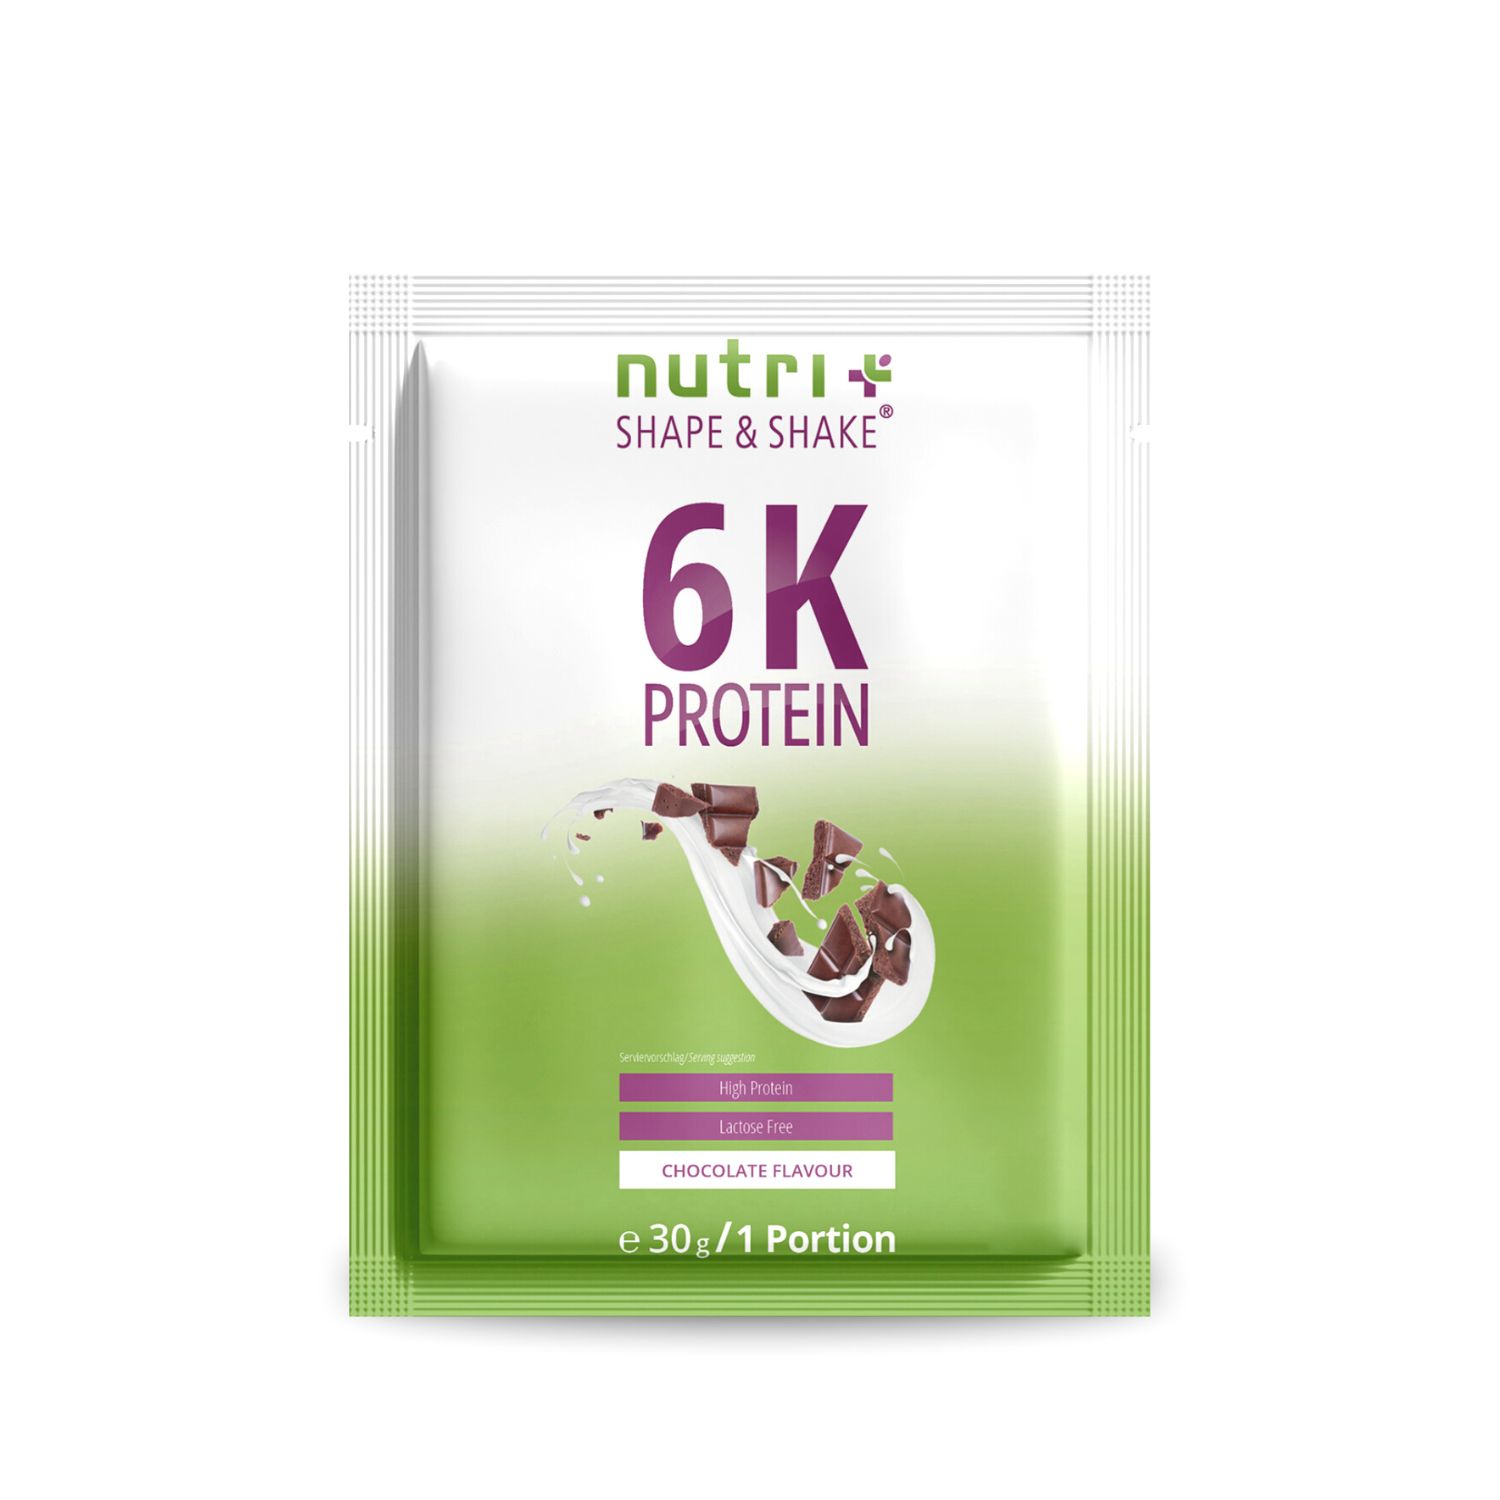 Vegan 6K Protein Powder Samples